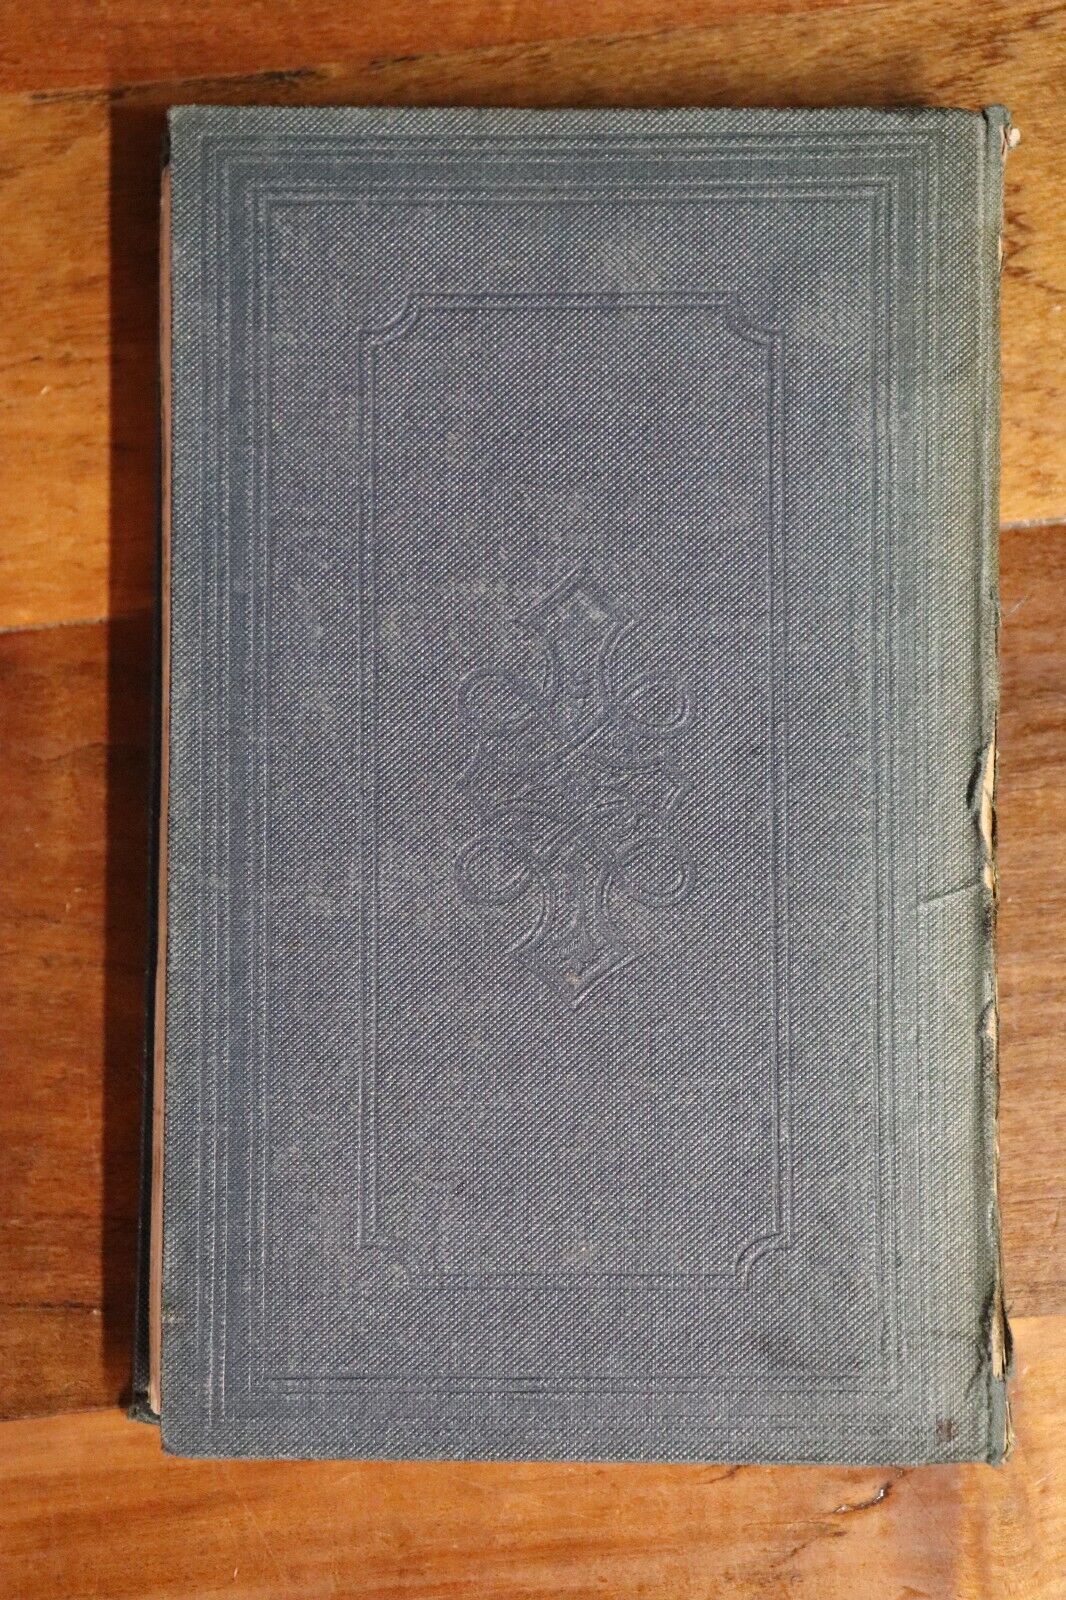 A Practical Discourse On Religious Assemblies - 1840 - Antique Religious Book